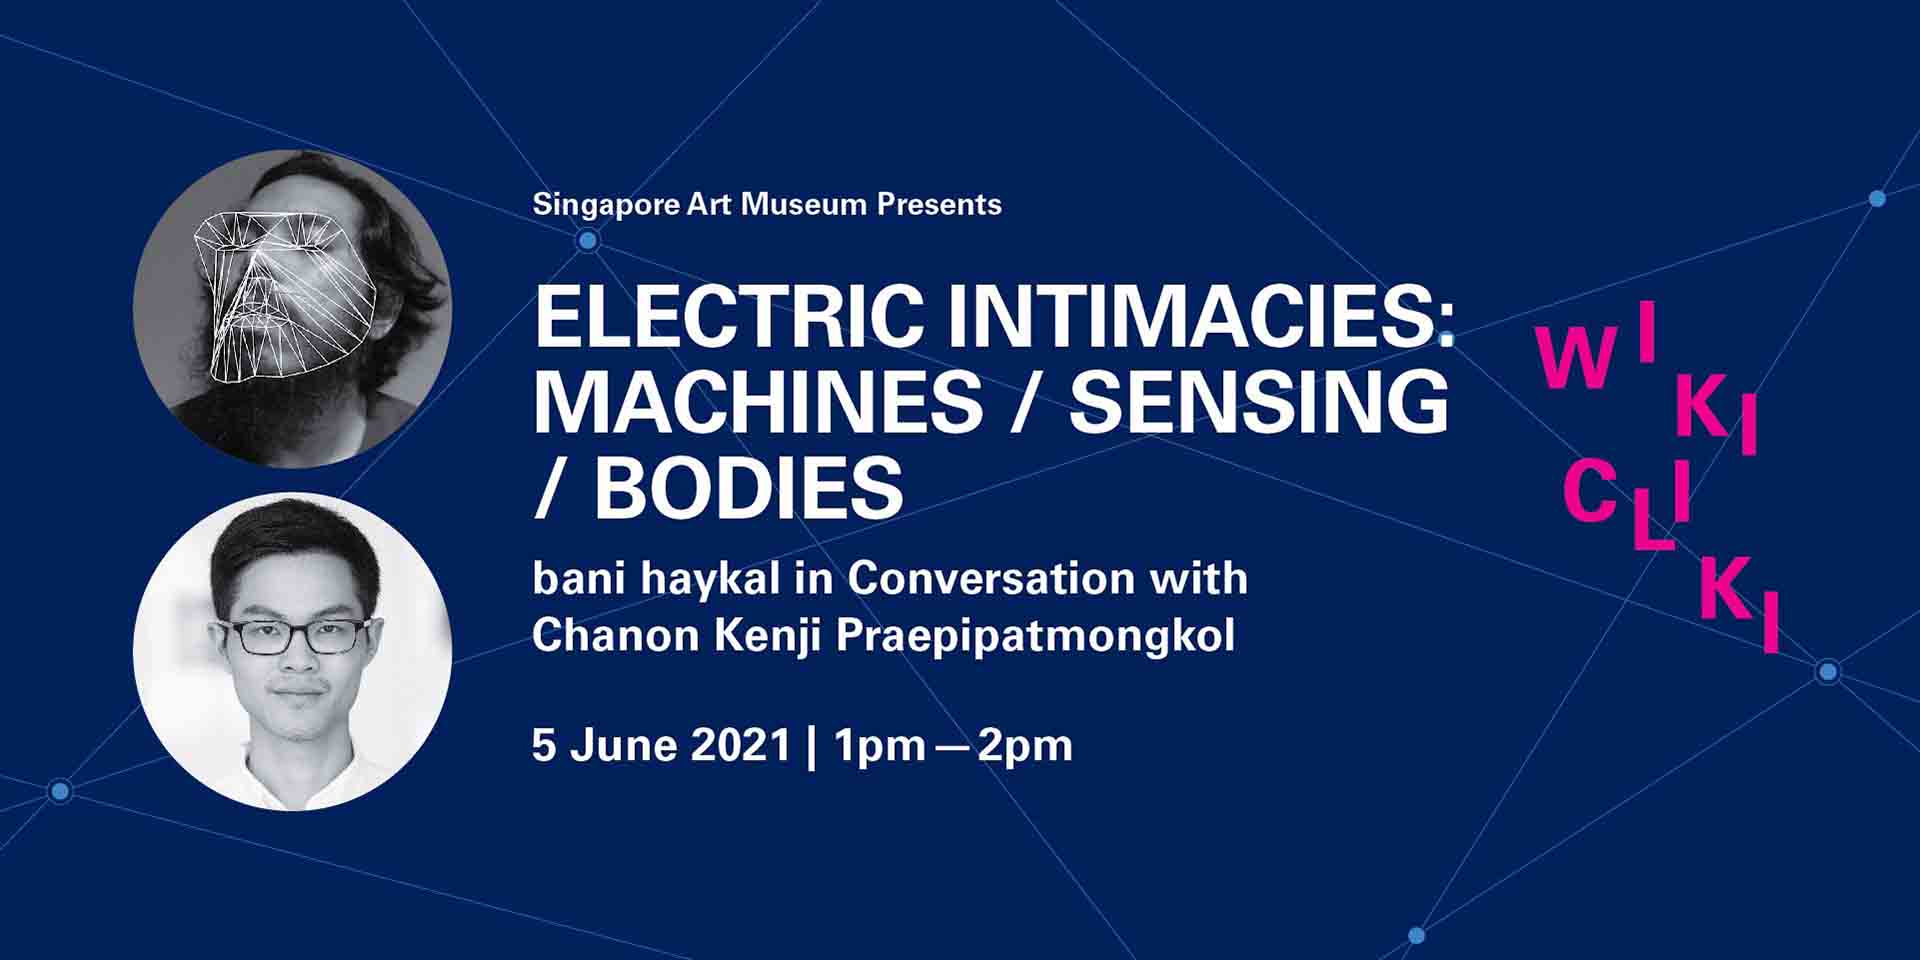 Electric Intimacies: Machines / Sensing / Bodies – bani haykal in Conversation with Chanon Kenji Praepipatmongkol